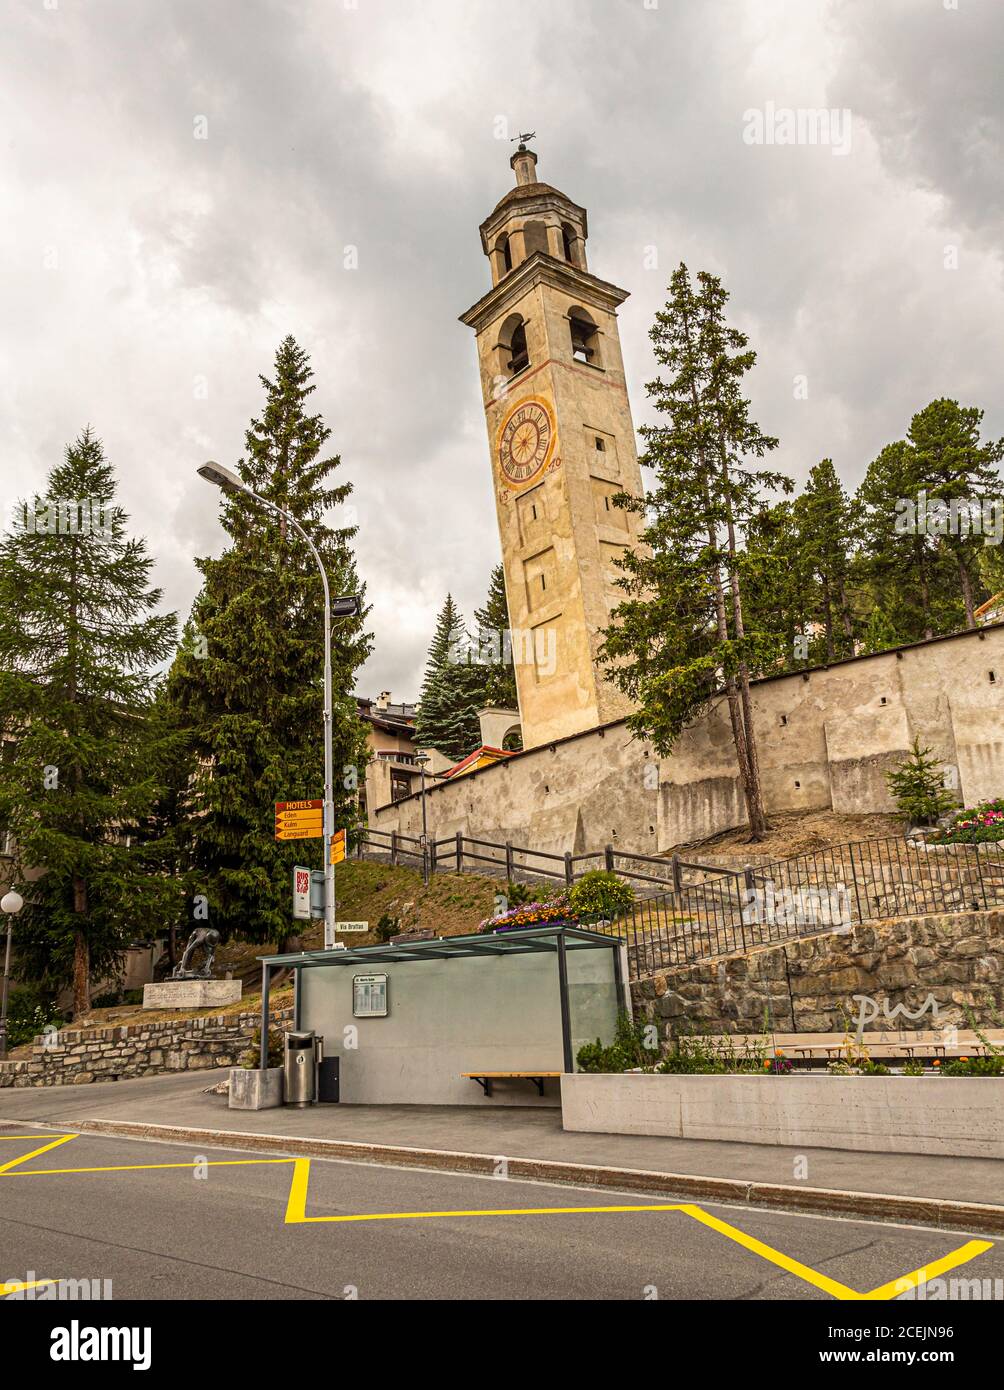 Schieferturm der St. Mauritius Kirche in St. Moritz, Schweiz Stockfoto